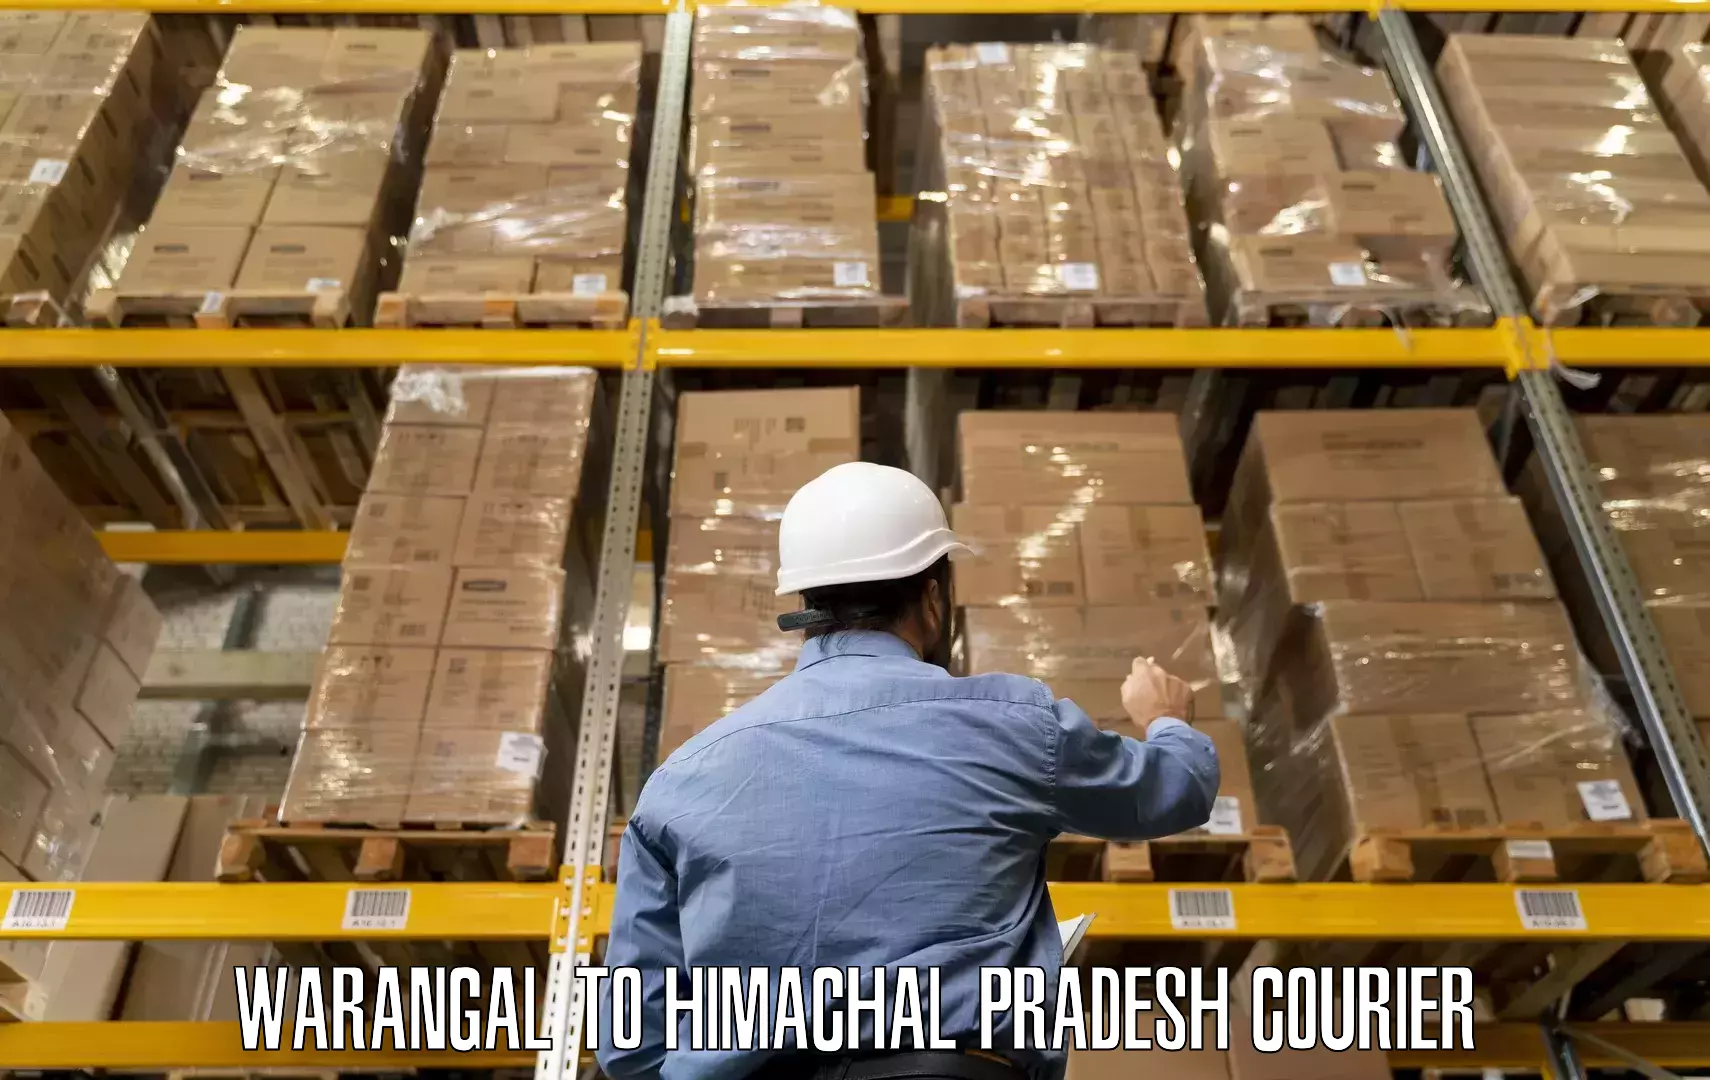 Personalized furniture moving Warangal to Rajgarh Sirmaur